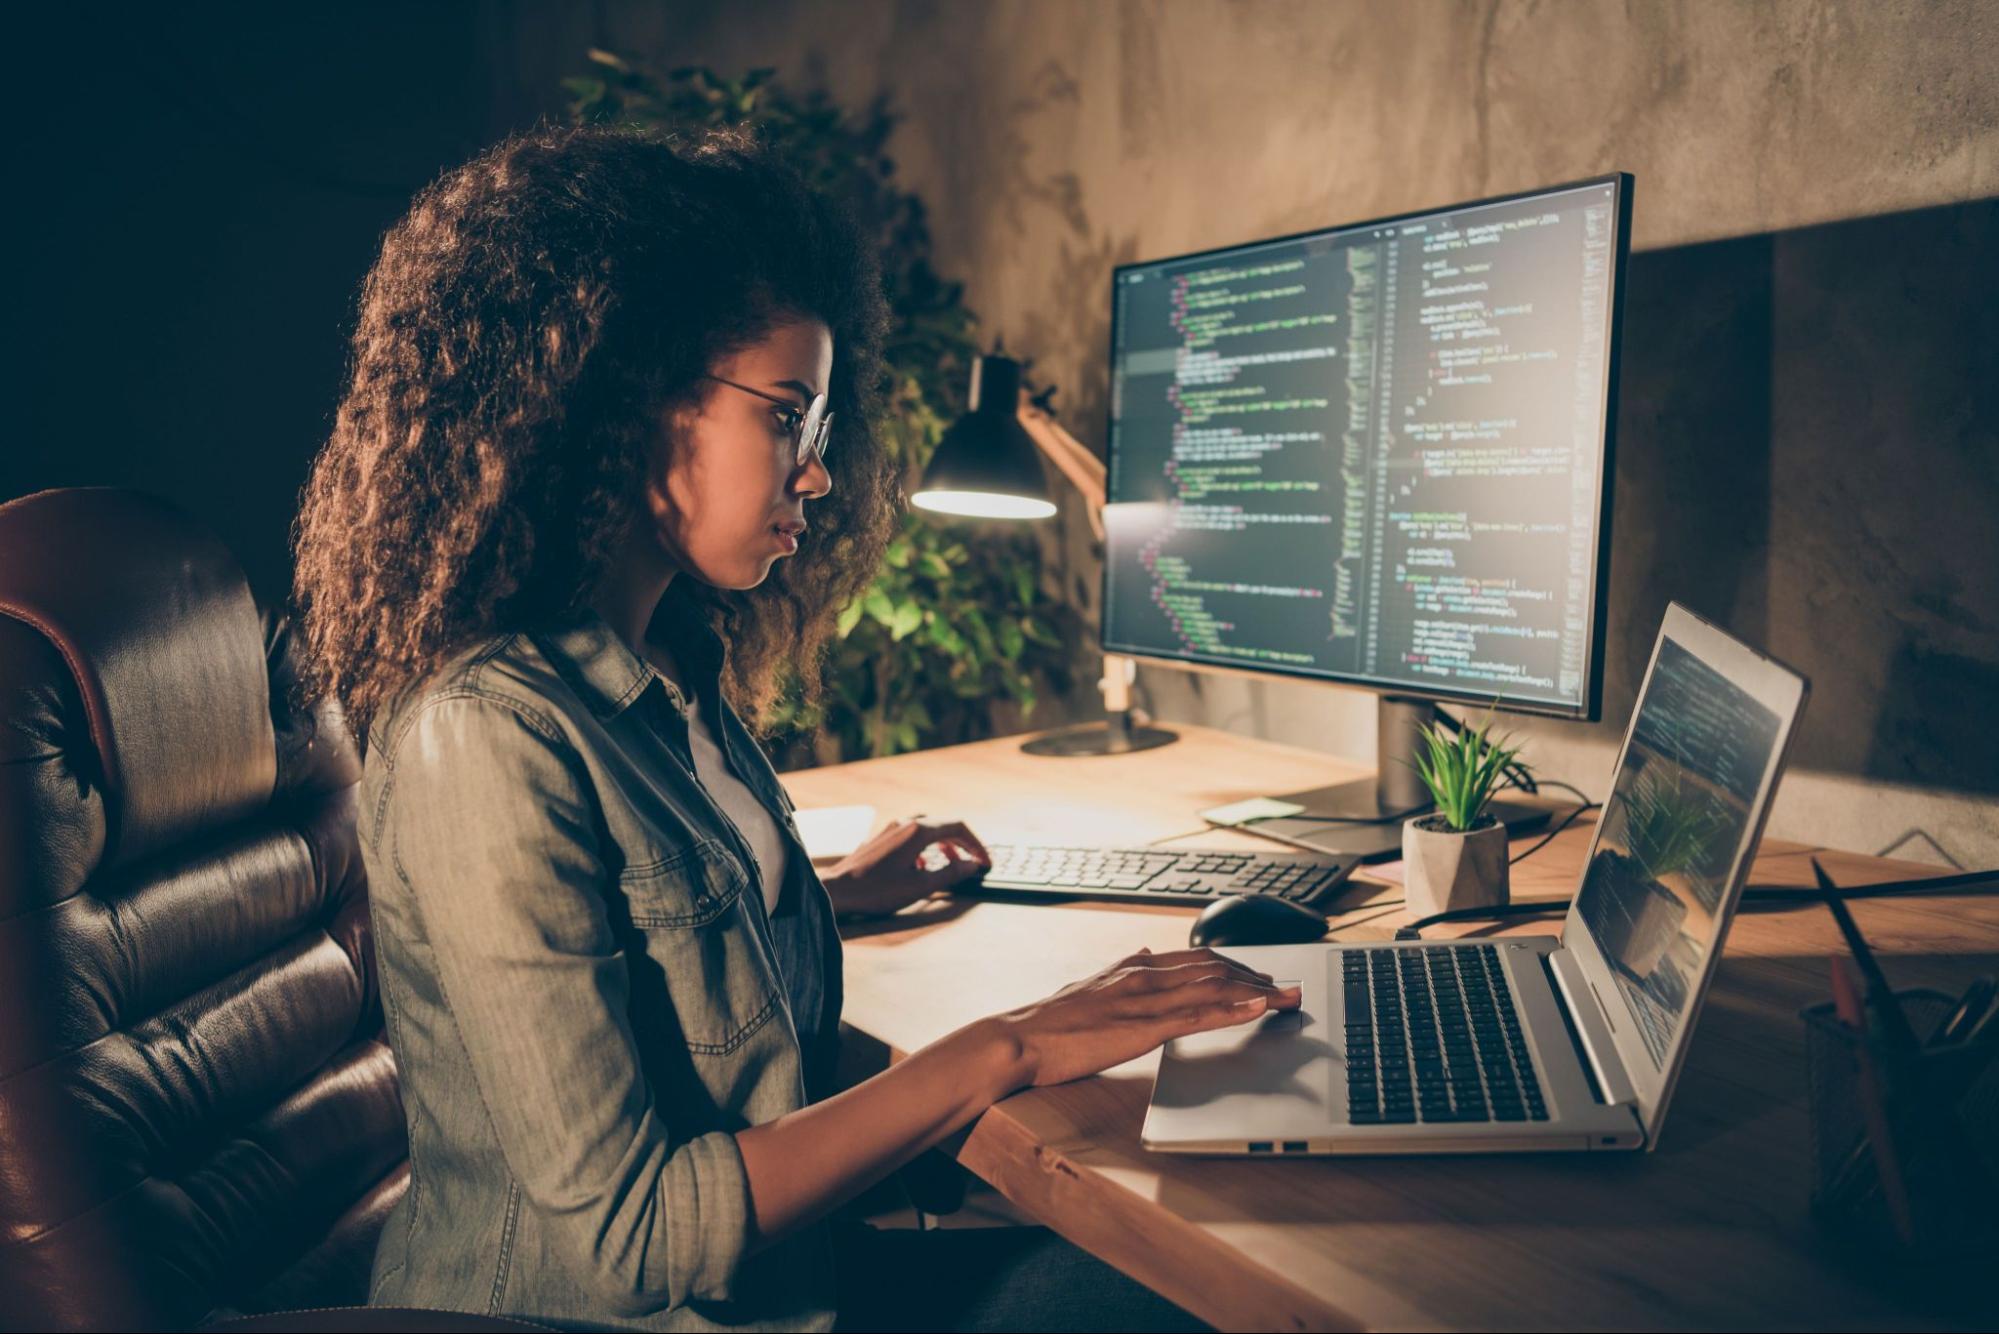 Imagem de uma mulher como pessoa desenvolvedora. À sua frente, encontra-se um notebook. Ao lado, um monitor exibindo uma IDE com um código de projeto em tela.